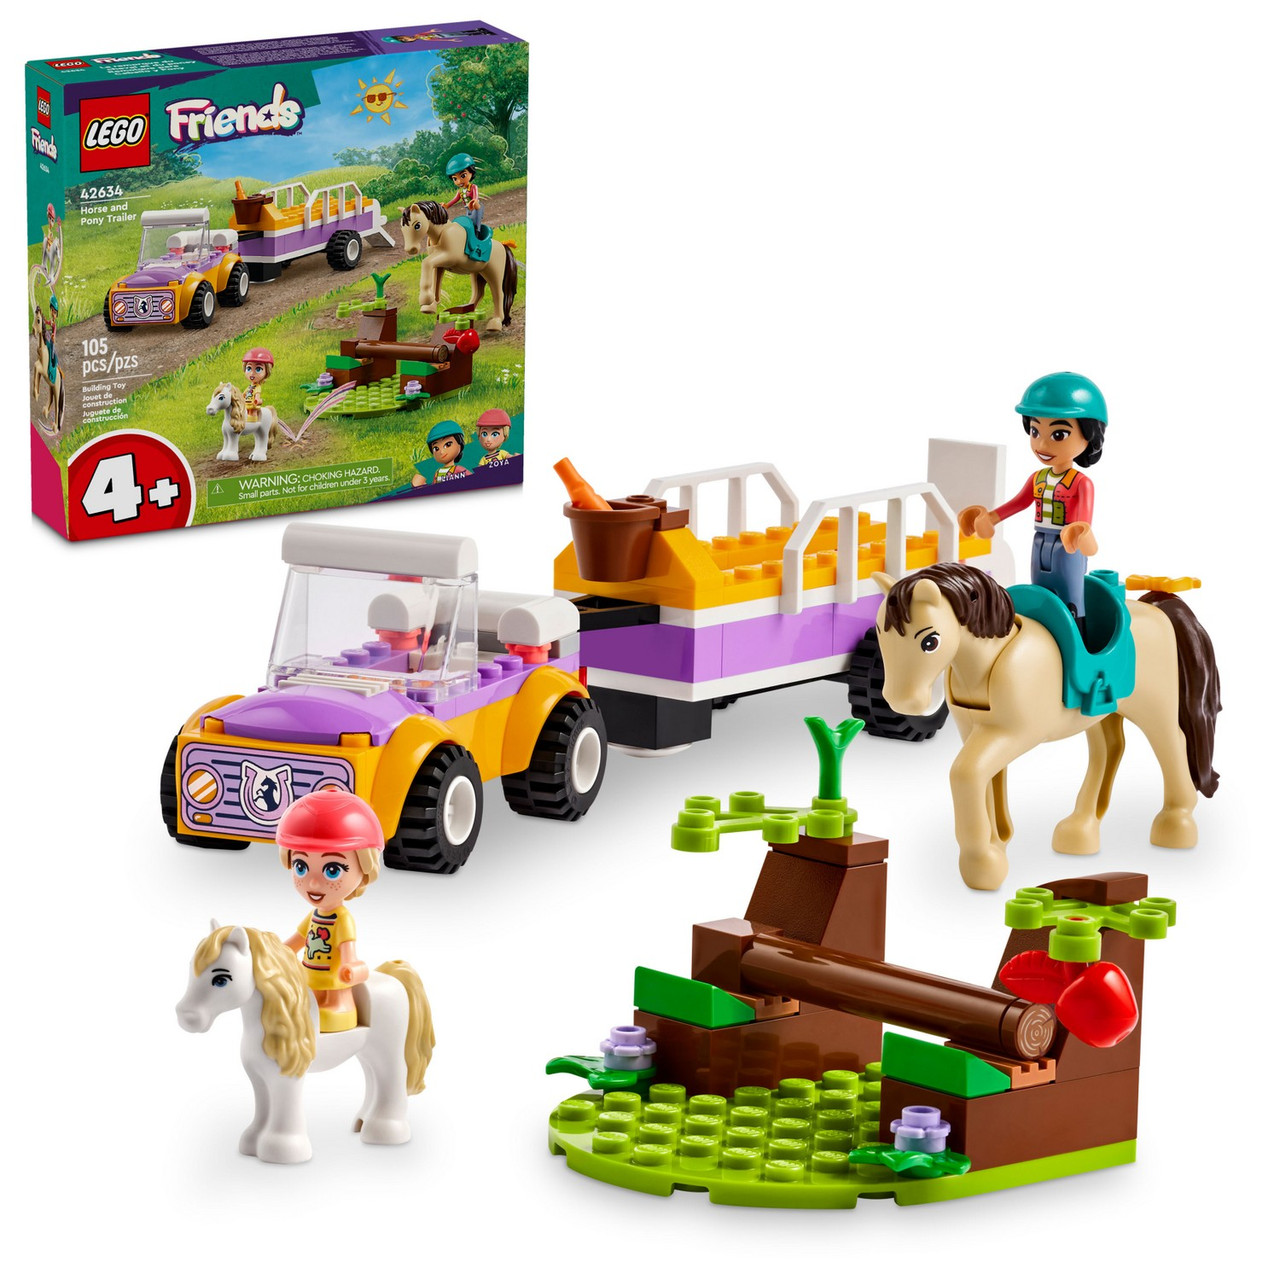 Lego 42634 Подружки Трейлер с лошадьми и пони